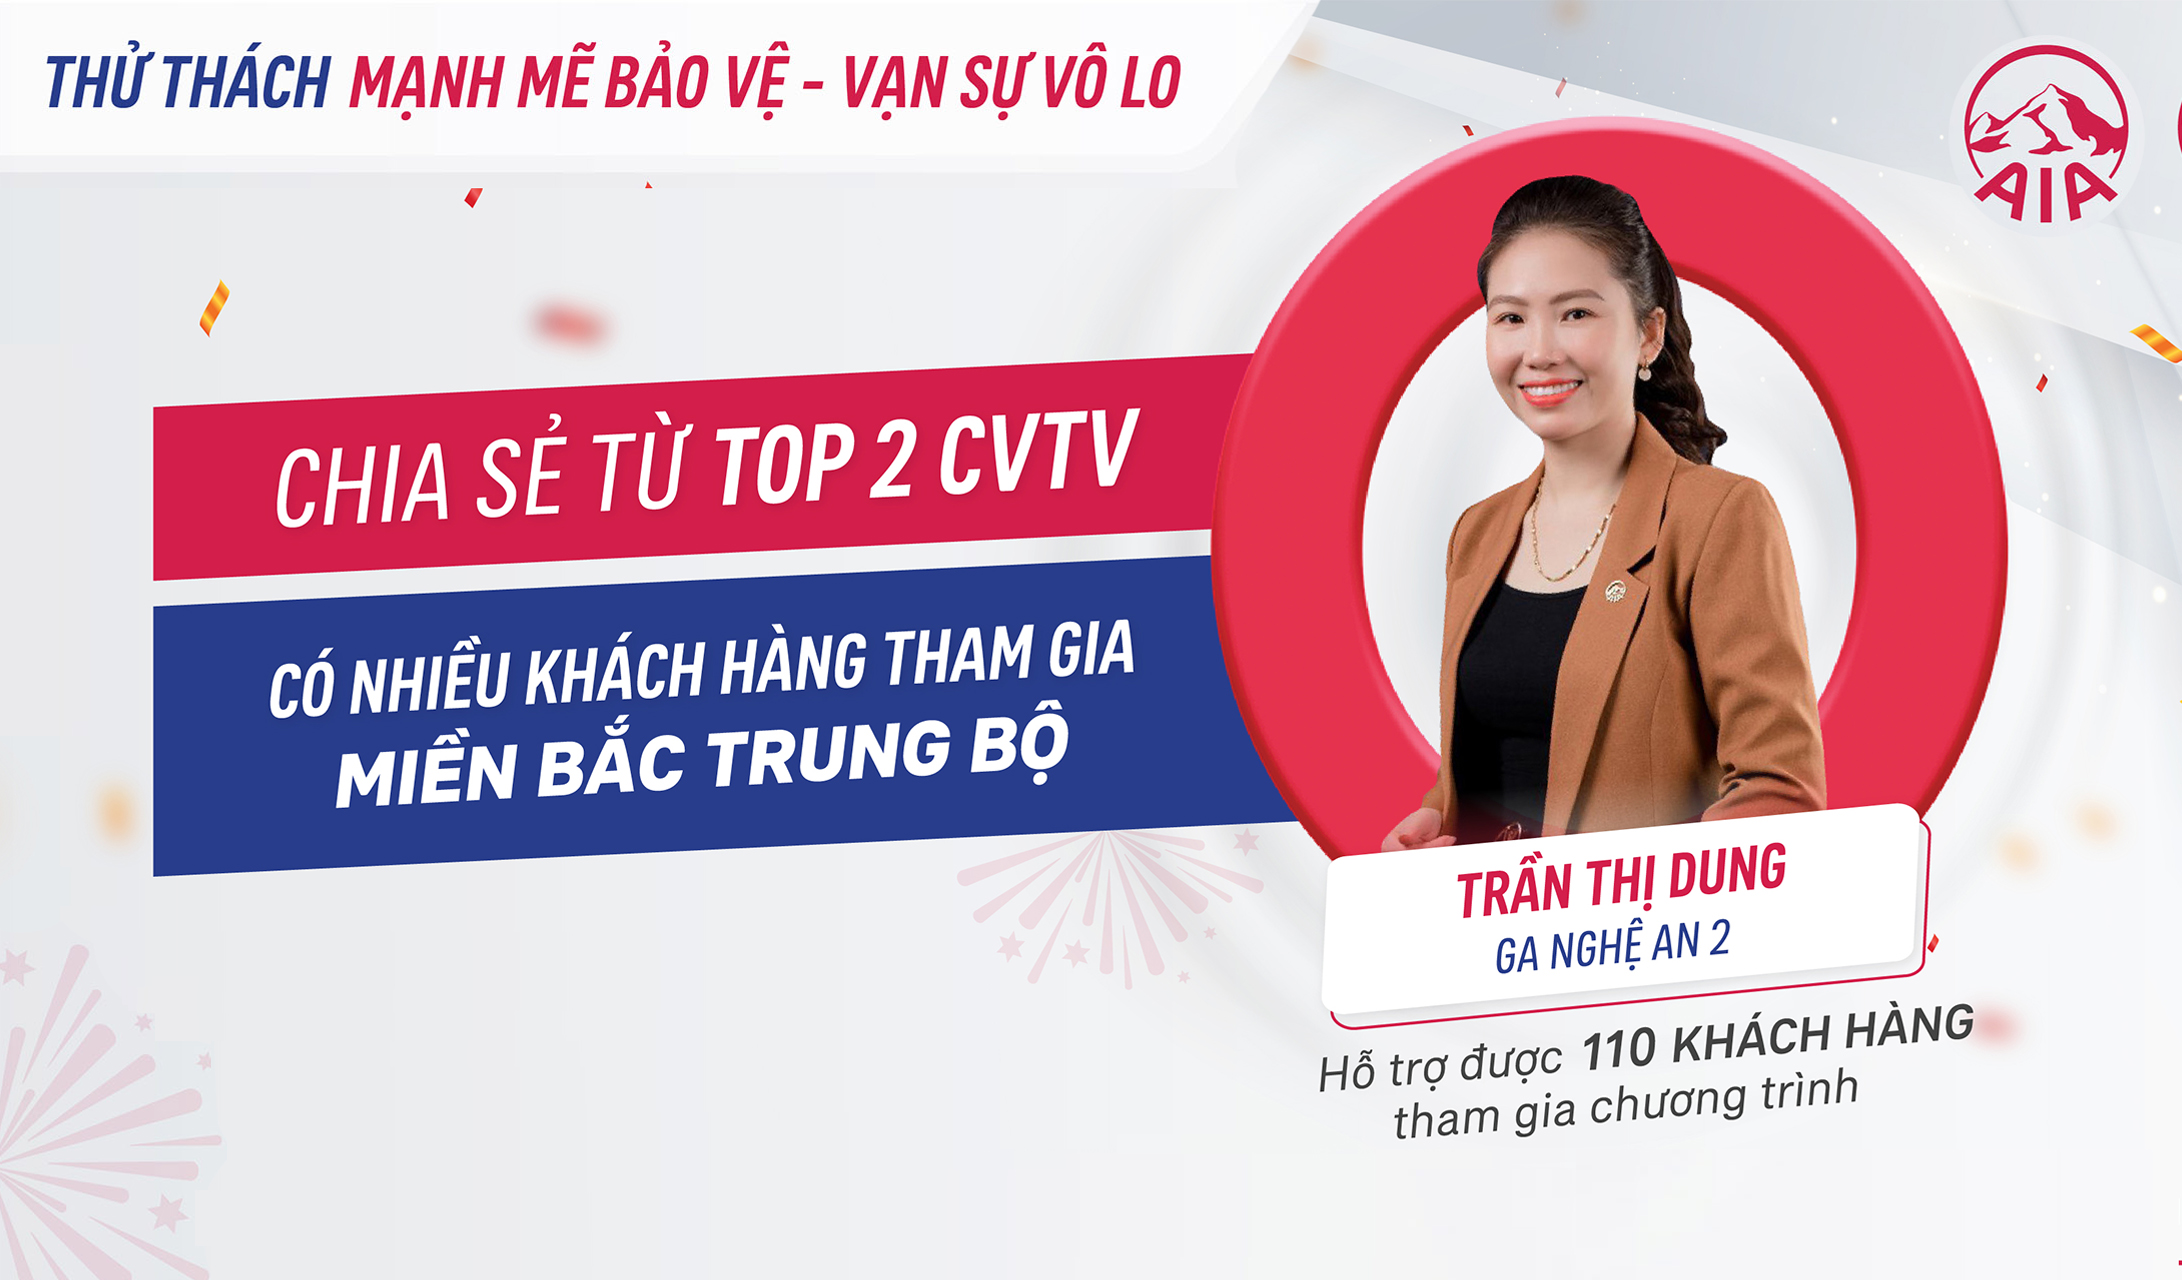 Chia sẻ từ Top 2 CVTV có nhiều khách hàng tham gia – KV Bắc Trung Bộ, GA Nghệ An 2